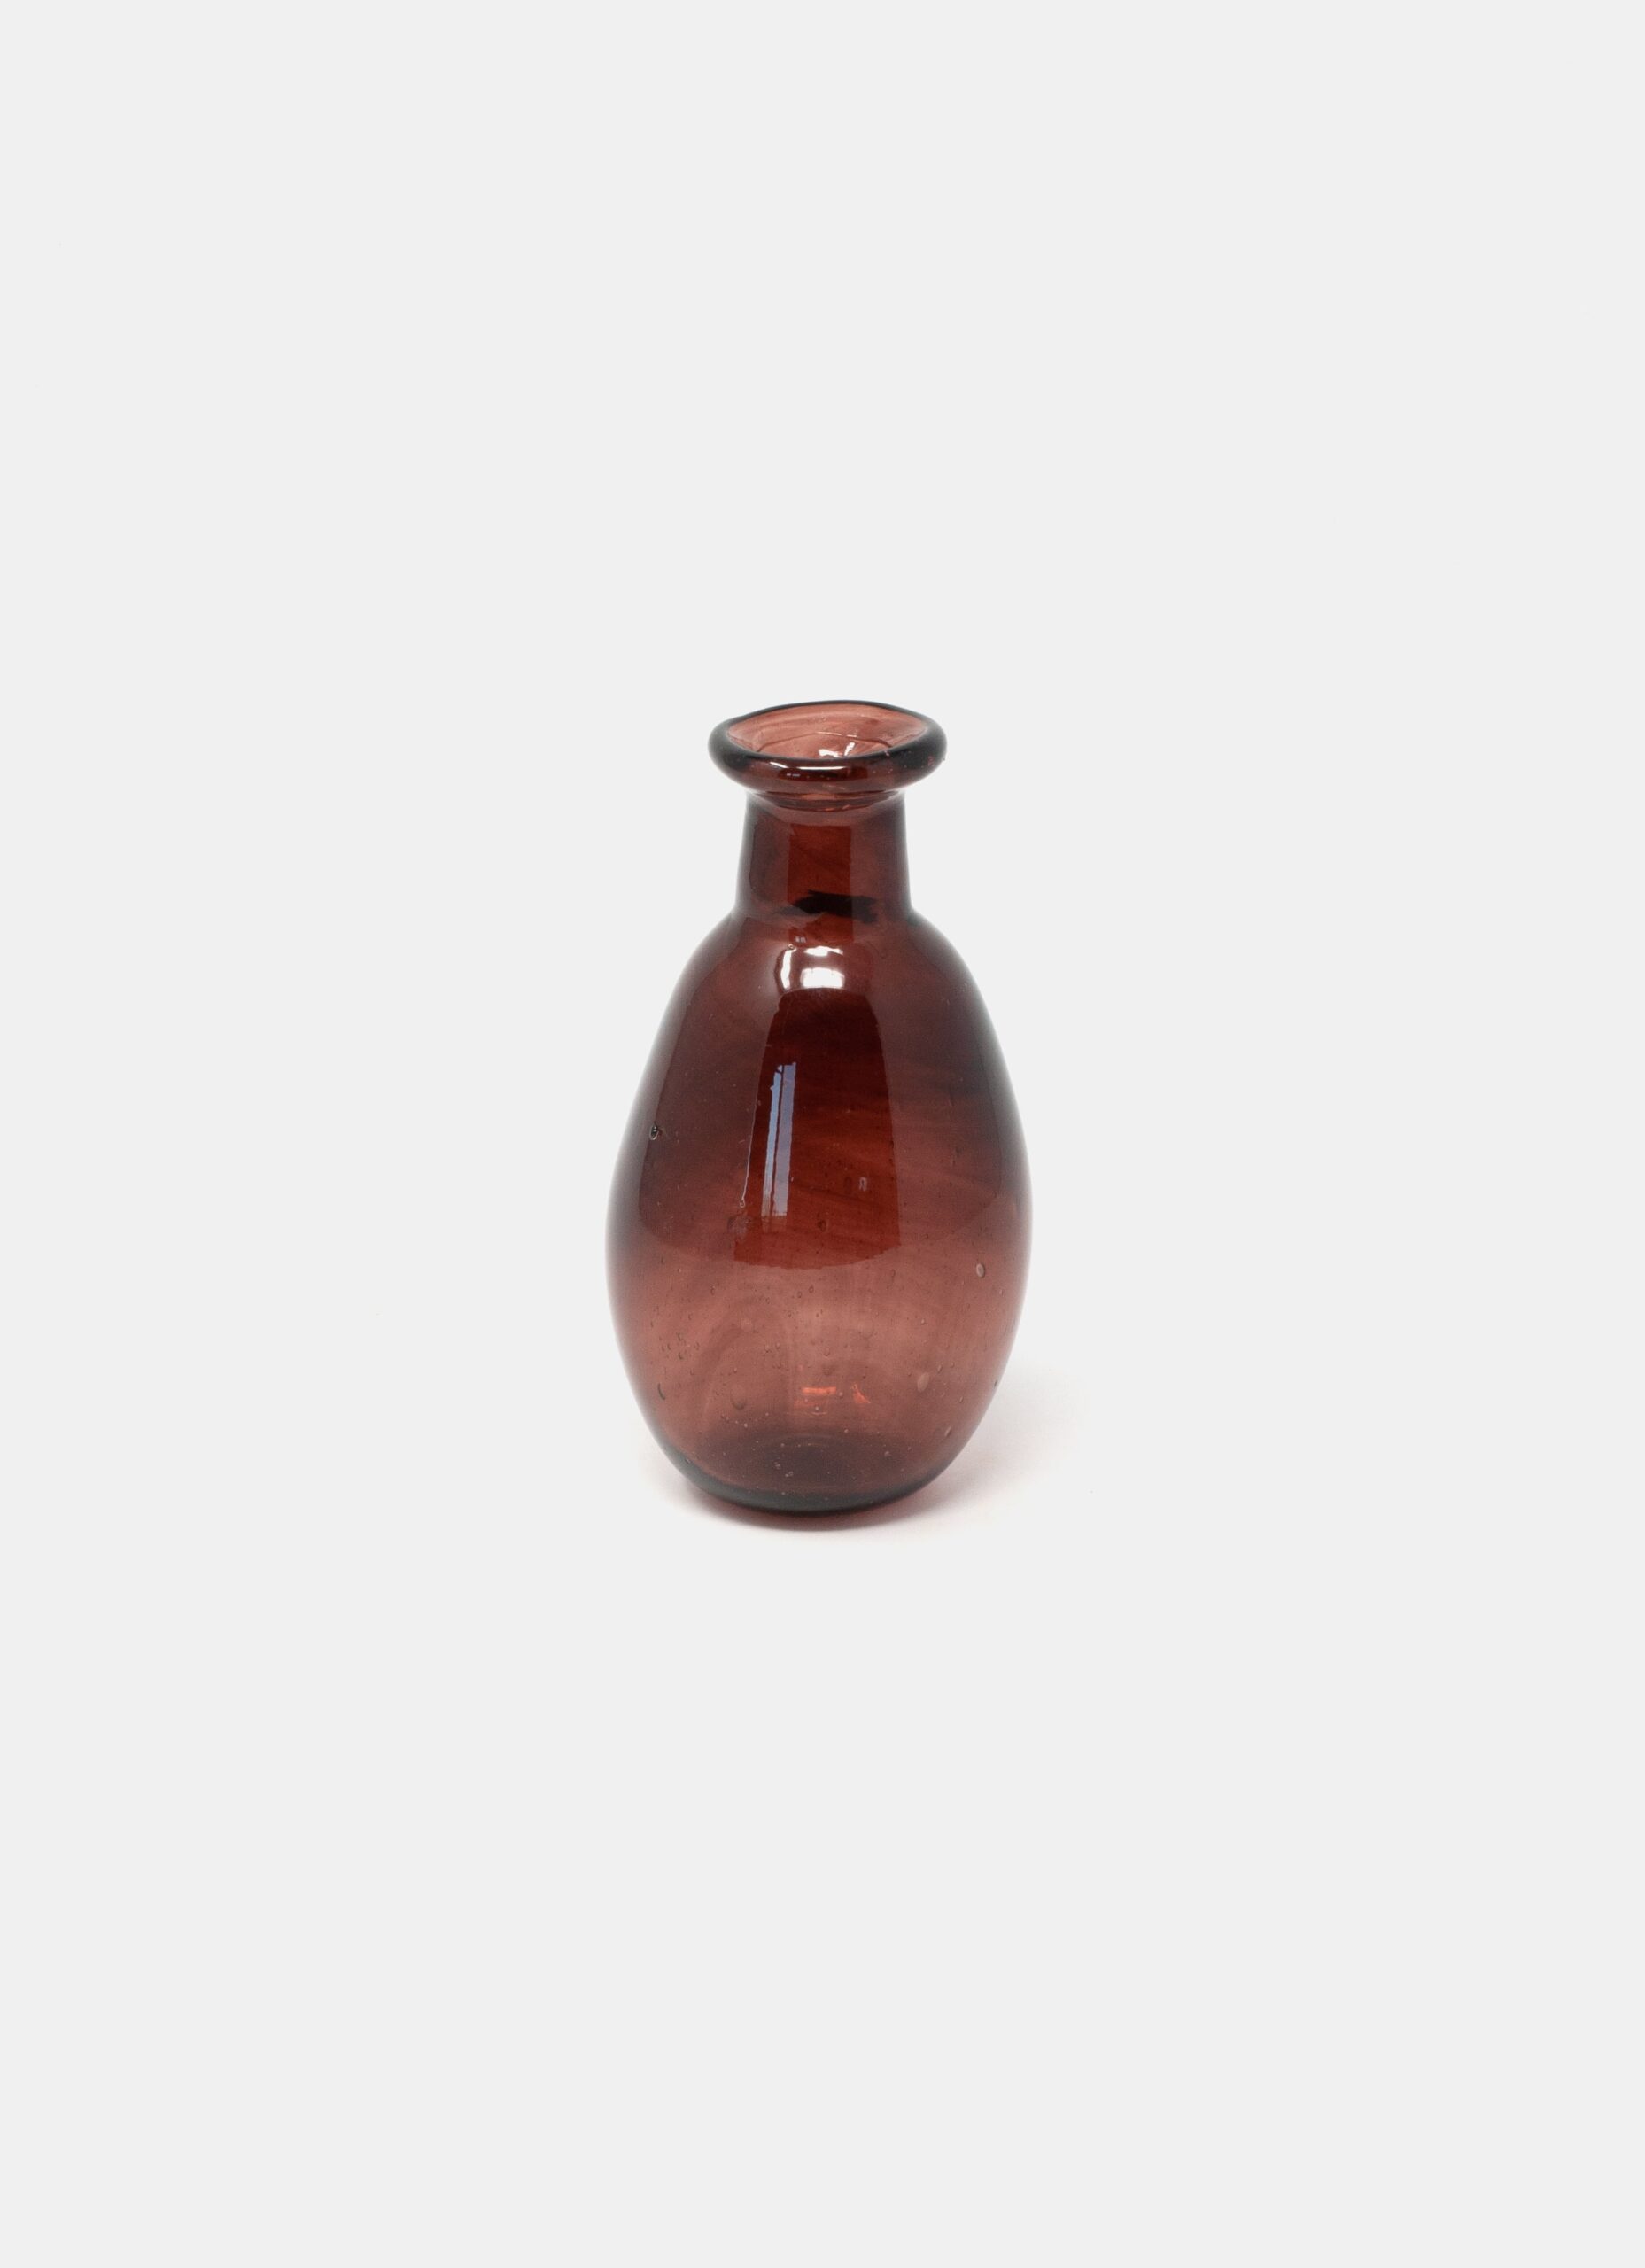 La Soufflerie - Handblown Glass Vase - Framboise - Amour Sans Anse